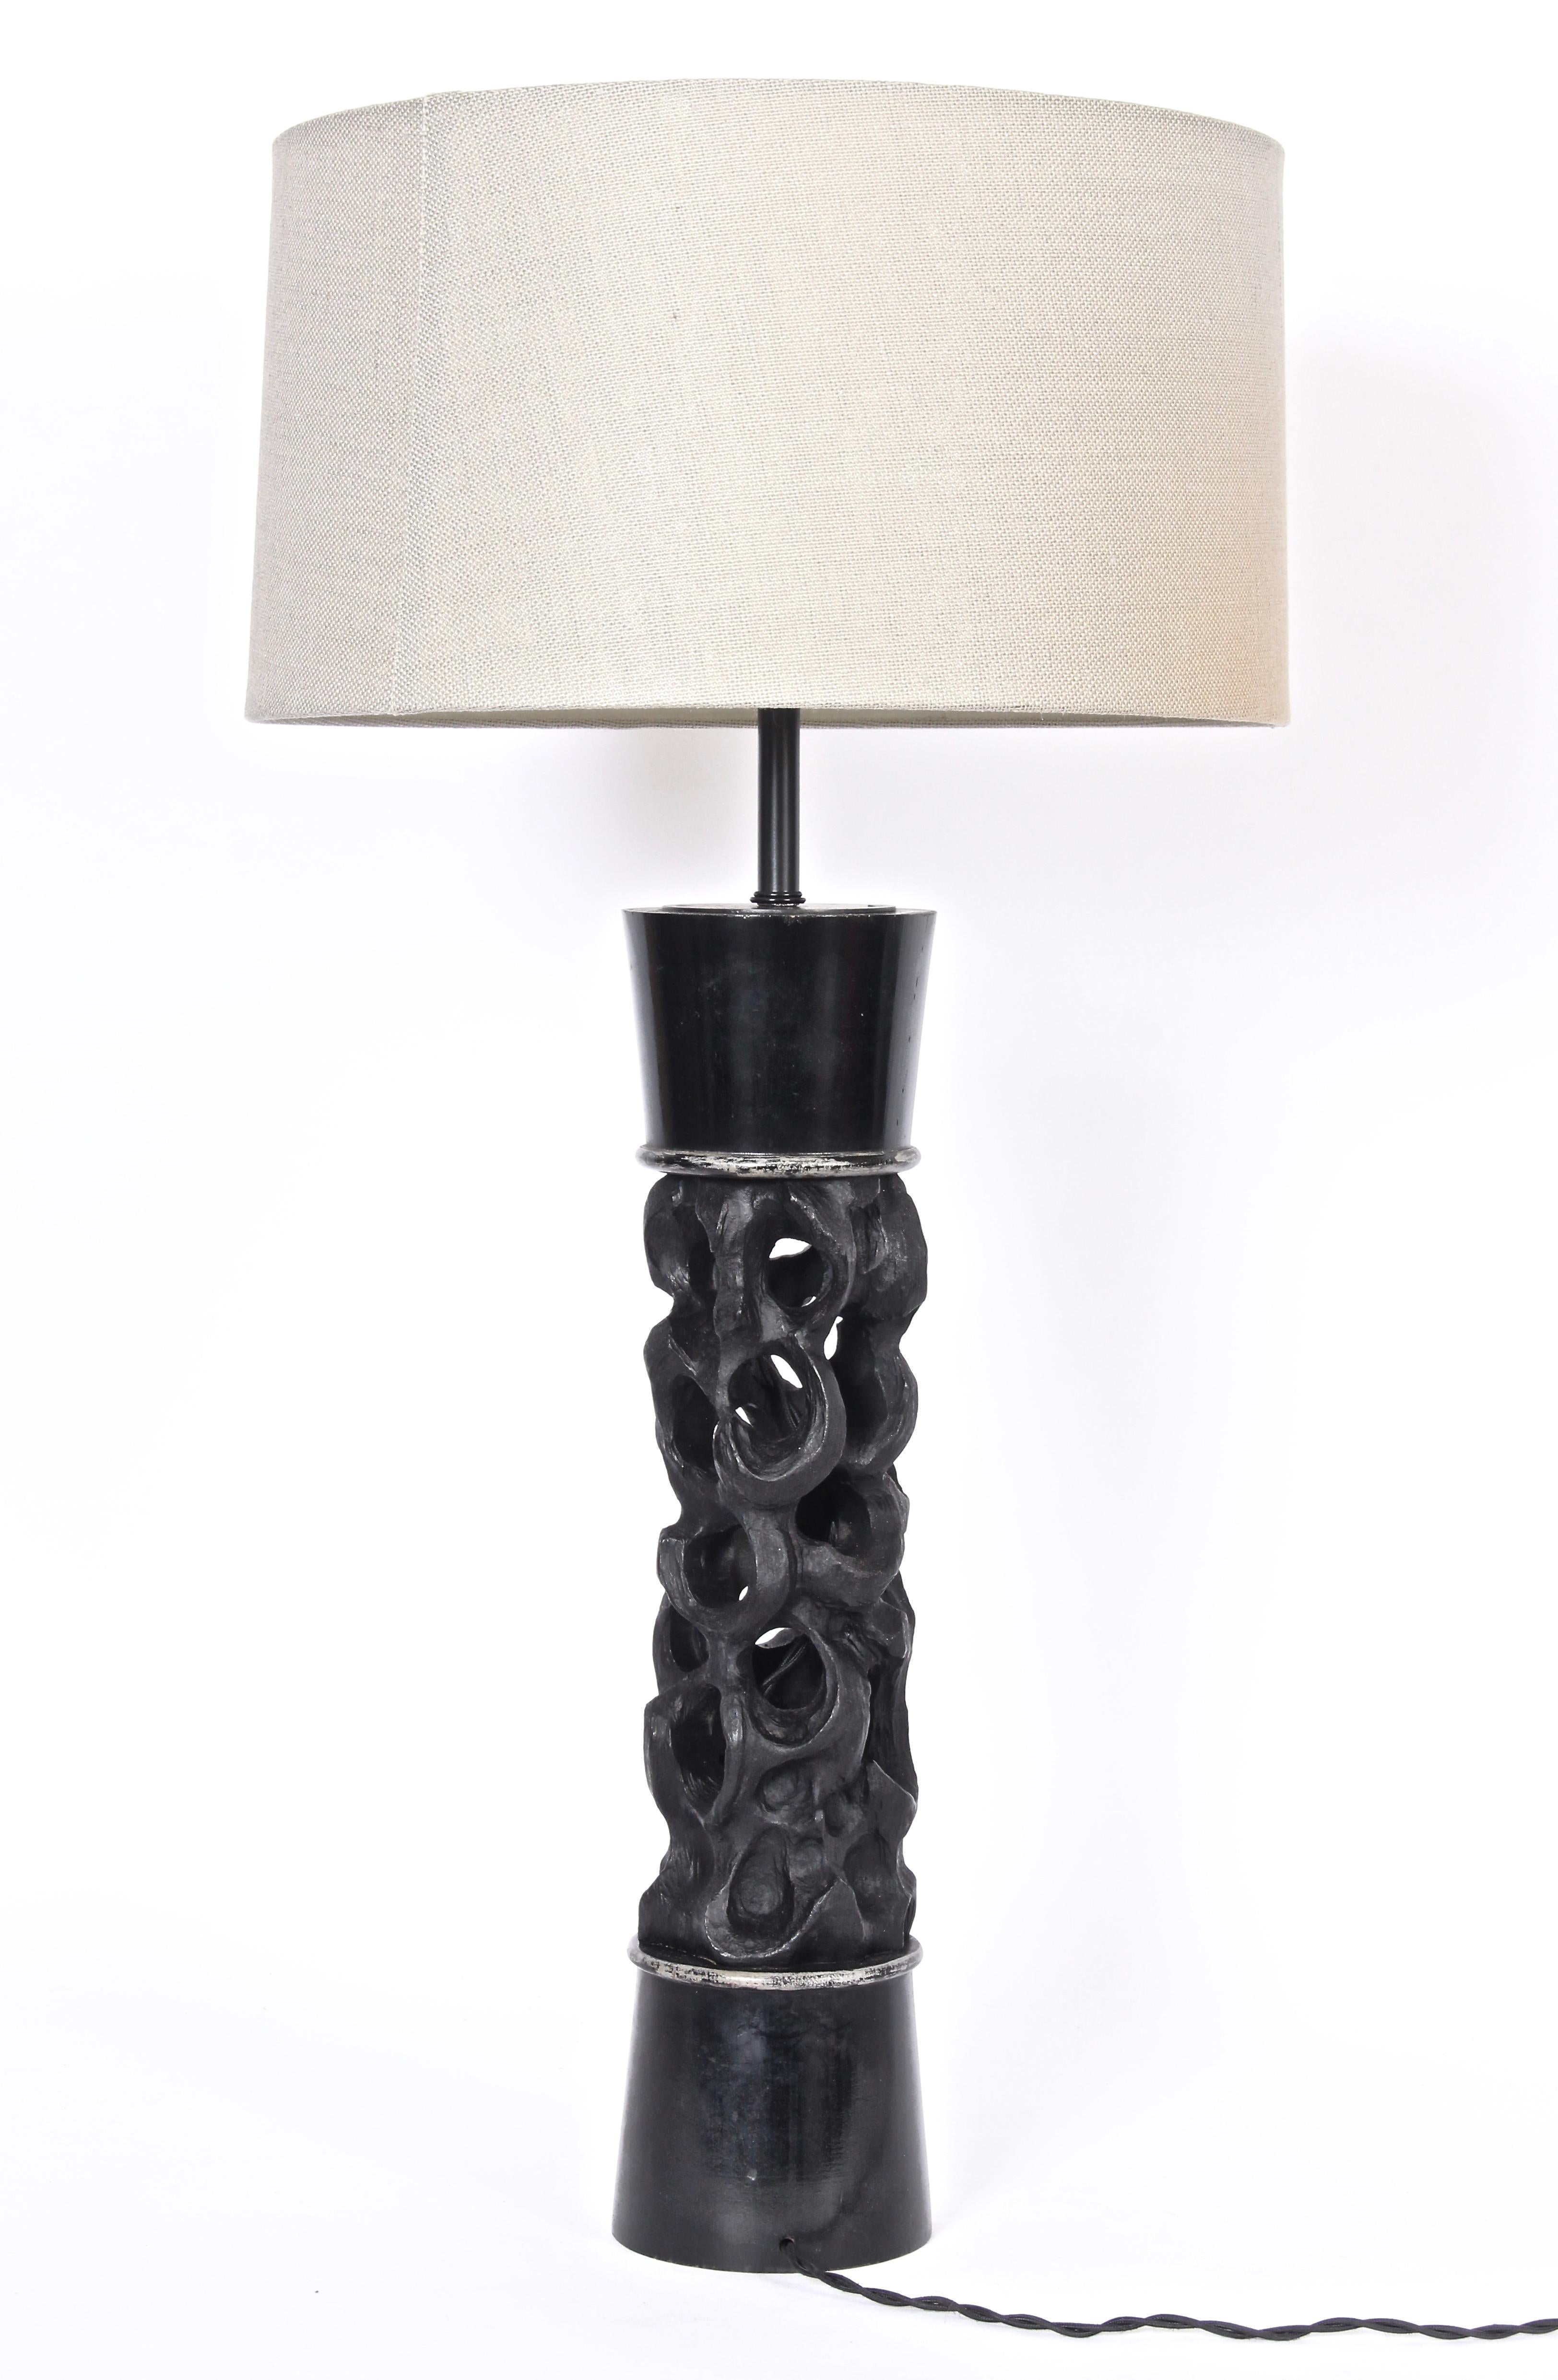 Monumentale lampe de table James Mont fabriquée à la main.  Avec une légère forme de sablier en bois sculpté noirci et des détails argentés. Faible encombrement. L'abat-jour est présenté à des fins d'exposition uniquement (10 H x 17 P haut x 18 P